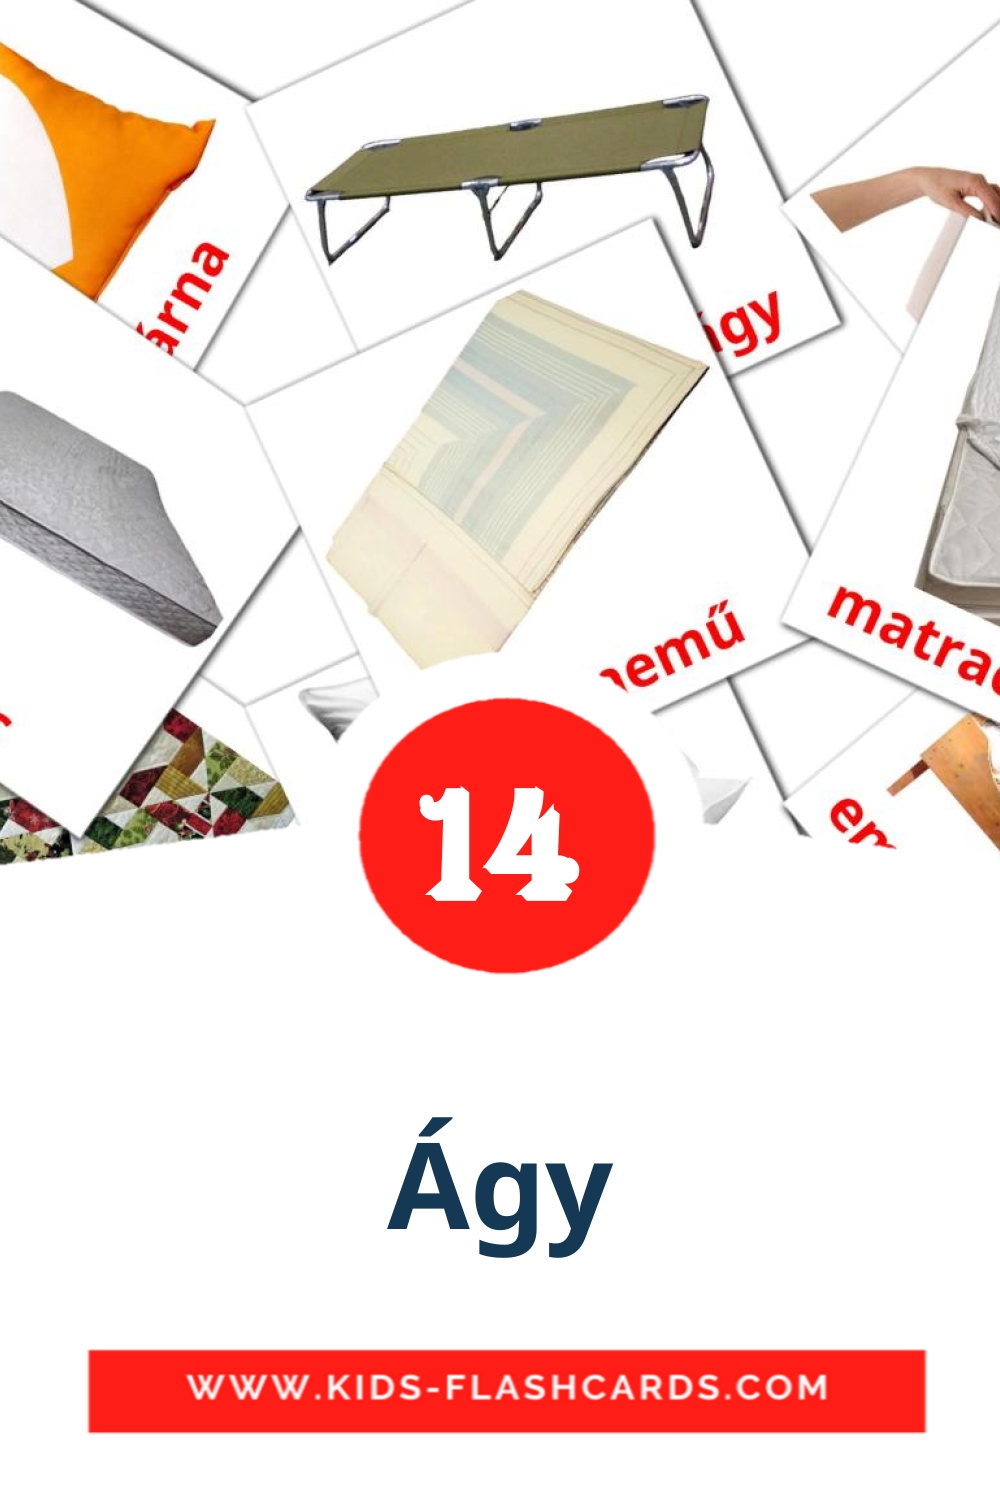 Ágy на венгерском для Детского Сада (14 карточек)